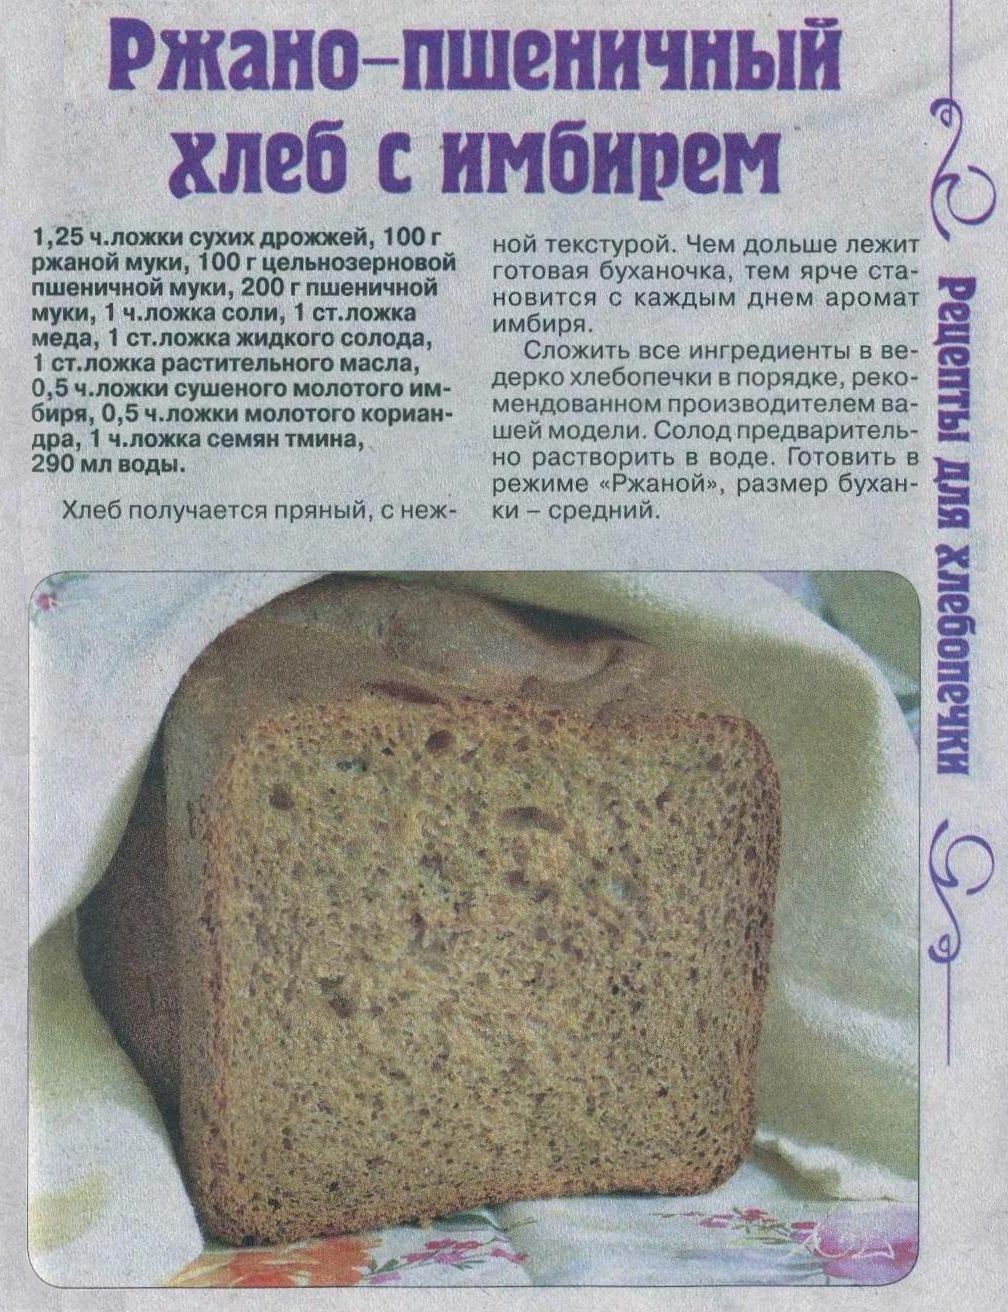 Приготовить в хлебопечке рецепты. Рецепт хлеба в хлебопечке. Тесто на хлеб в хлебопечке. Домашний хлеб в хлебопечке. Рецептура ржаного хлеба.